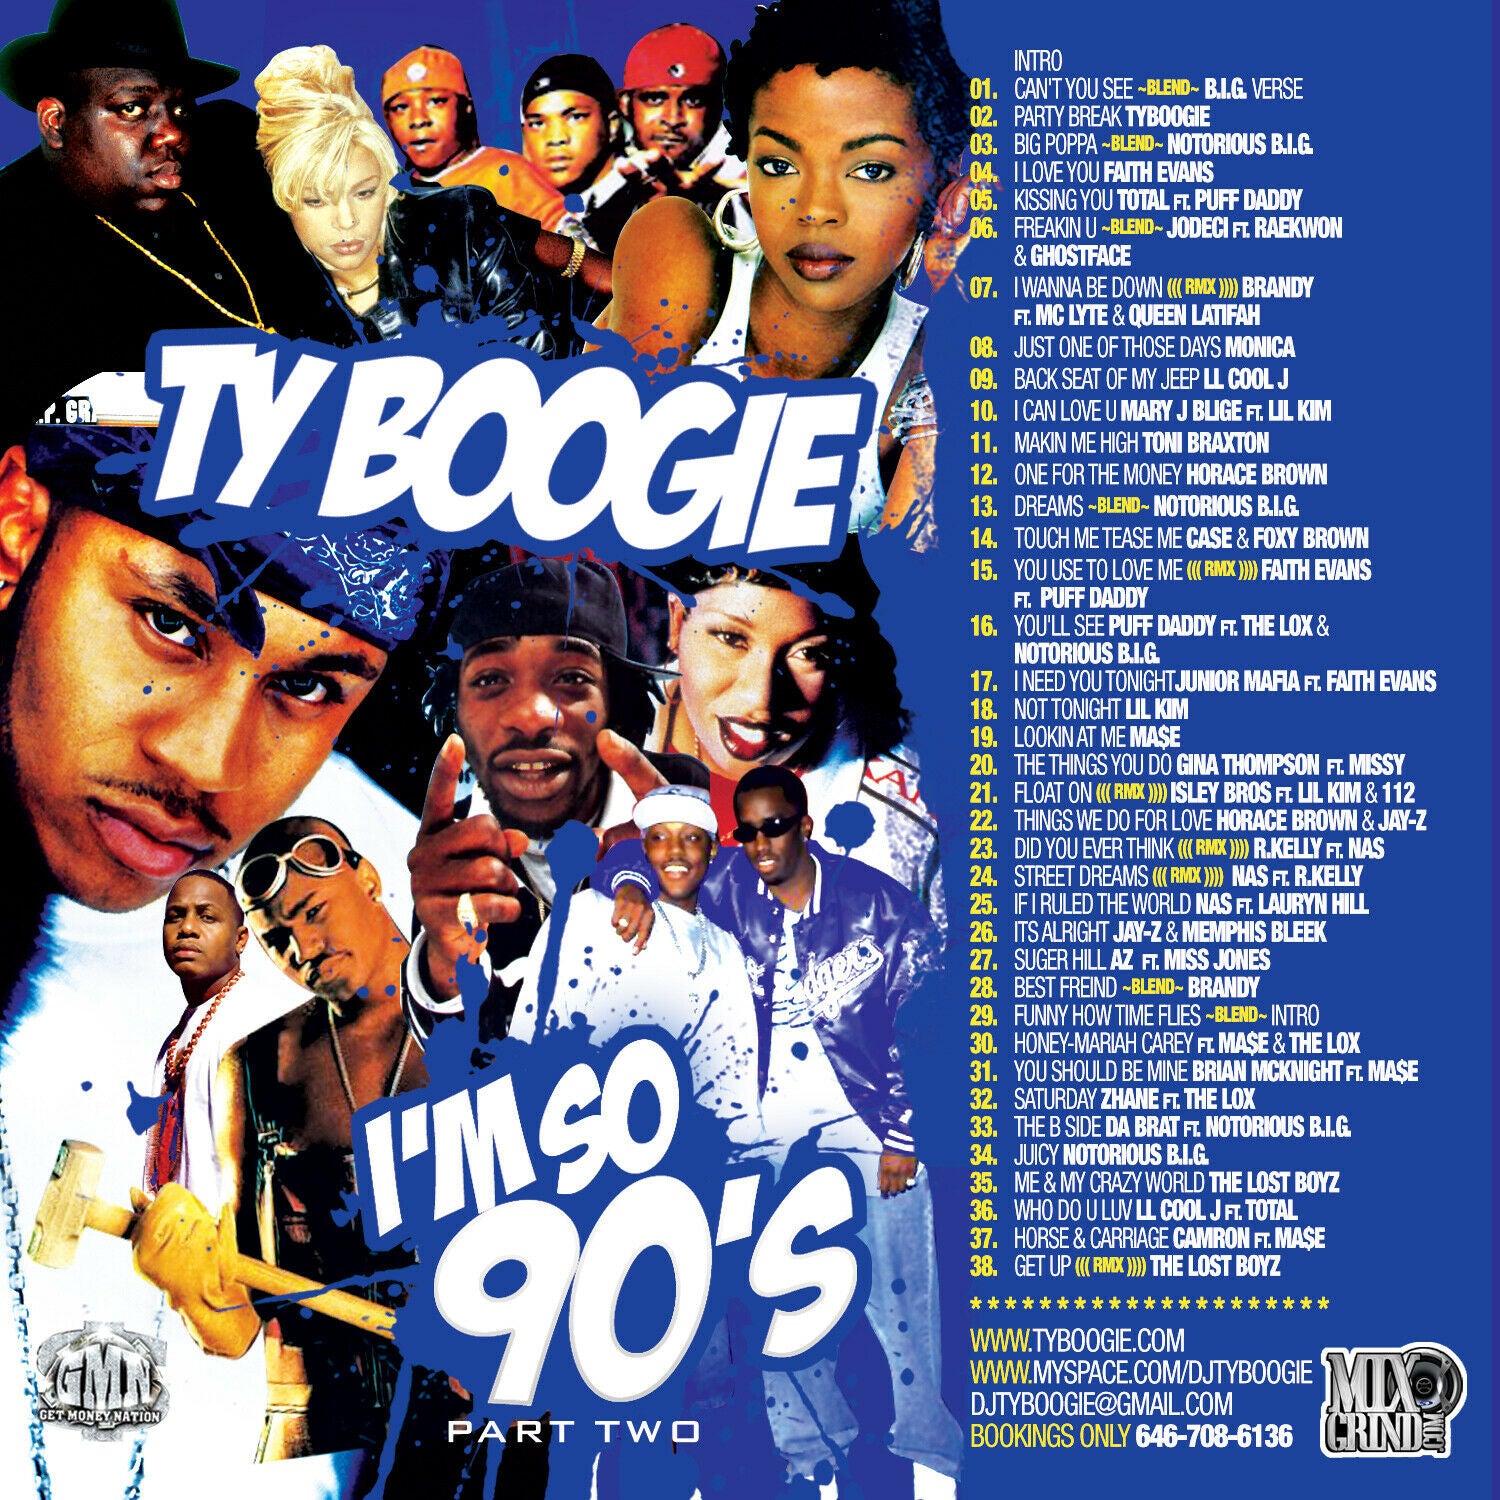 DJ TY BOOGIE - I'M SO 90's Pt. 2 (90's R&B, HIP-HOP and BLENDS 